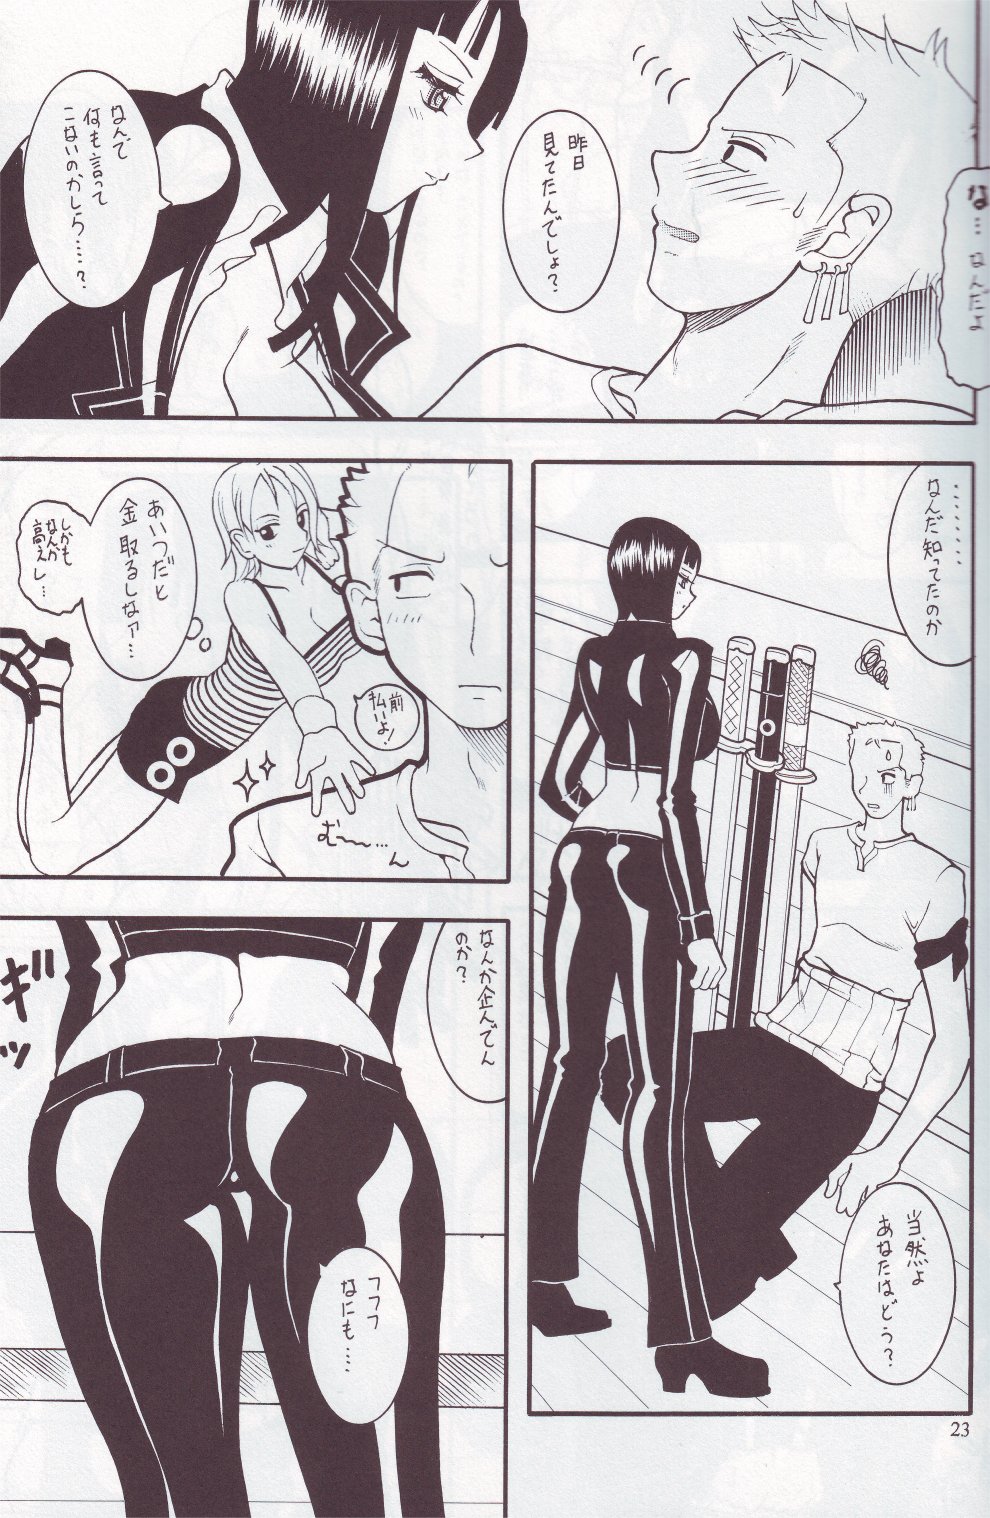 [SEMEDAIN G (Mizutani Mint, Mokkouyou Bond)] SEMEDAIN G WORKS vol.24 - Shuukan Shounen Jump Hon 4 (Bleach, One Piece) page 22 full